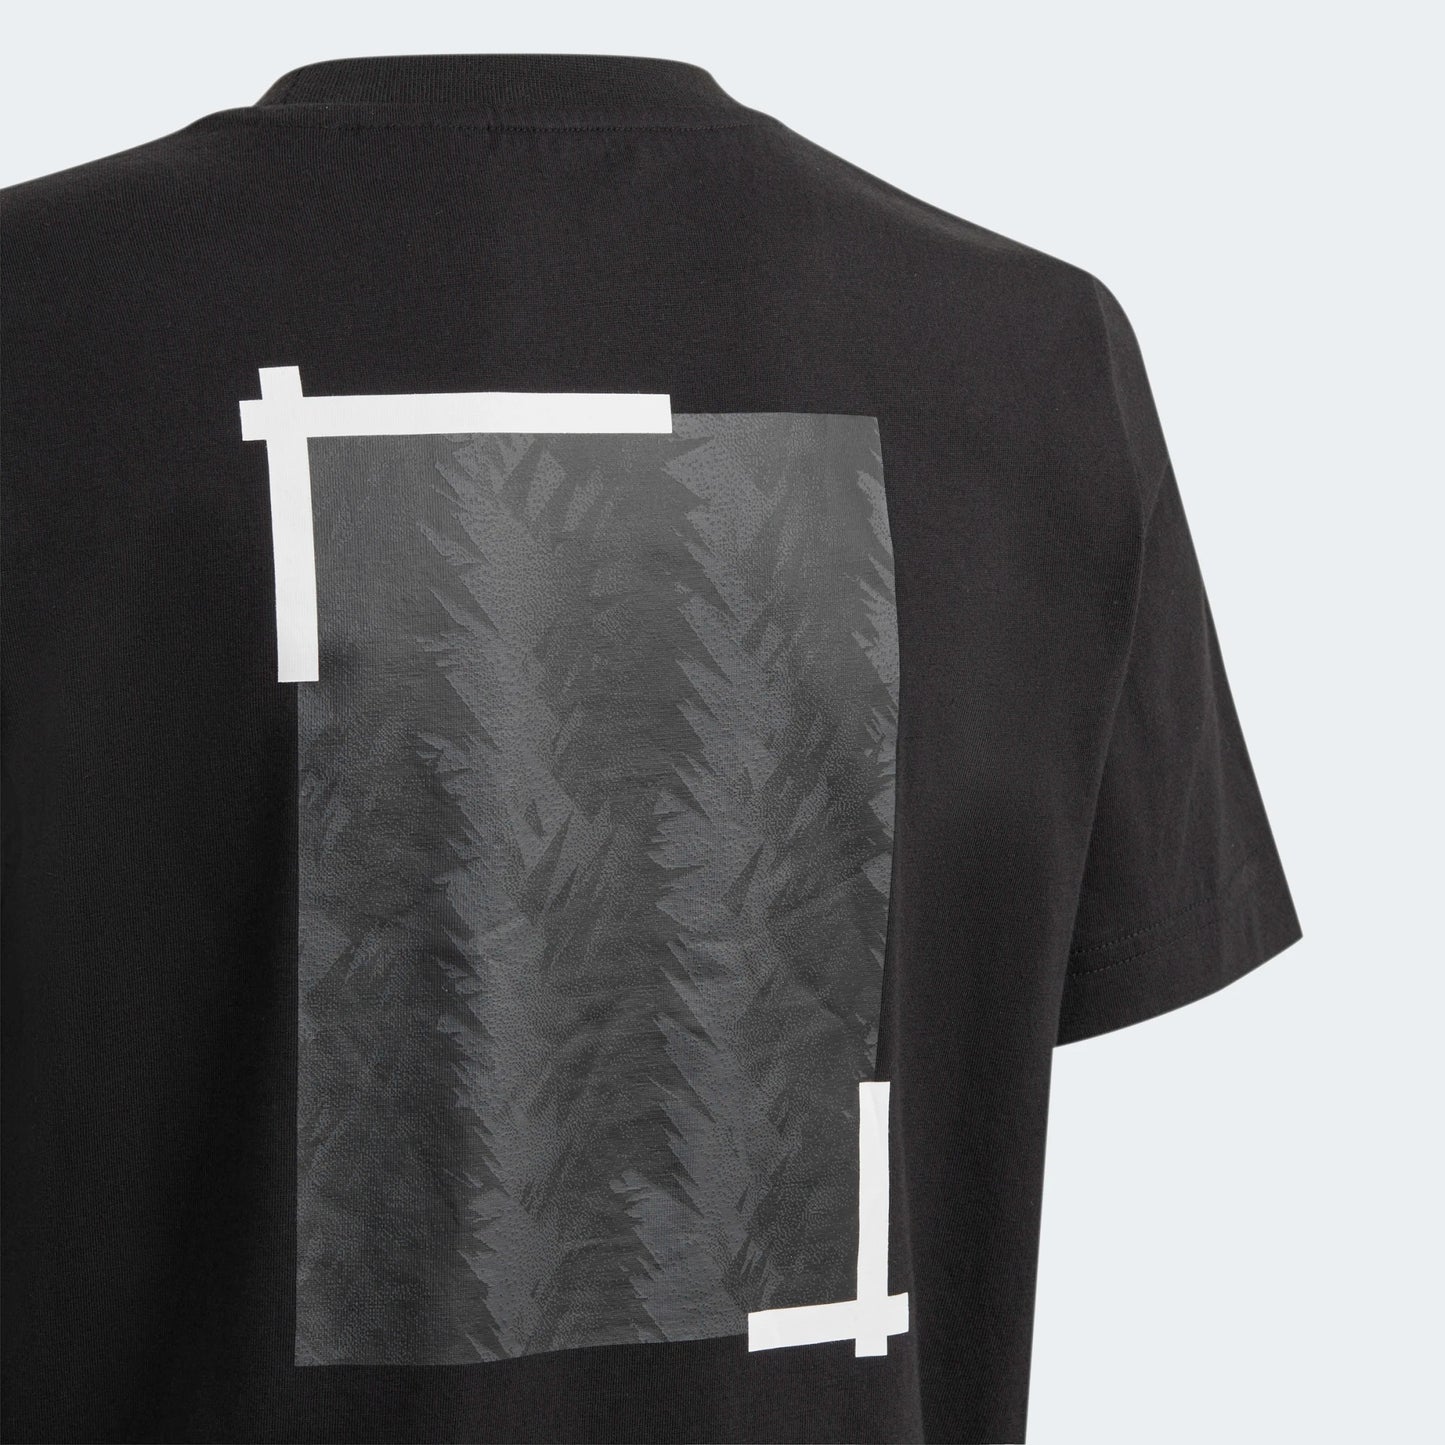 Youth Juventus Graphic T-Shirt [Black]